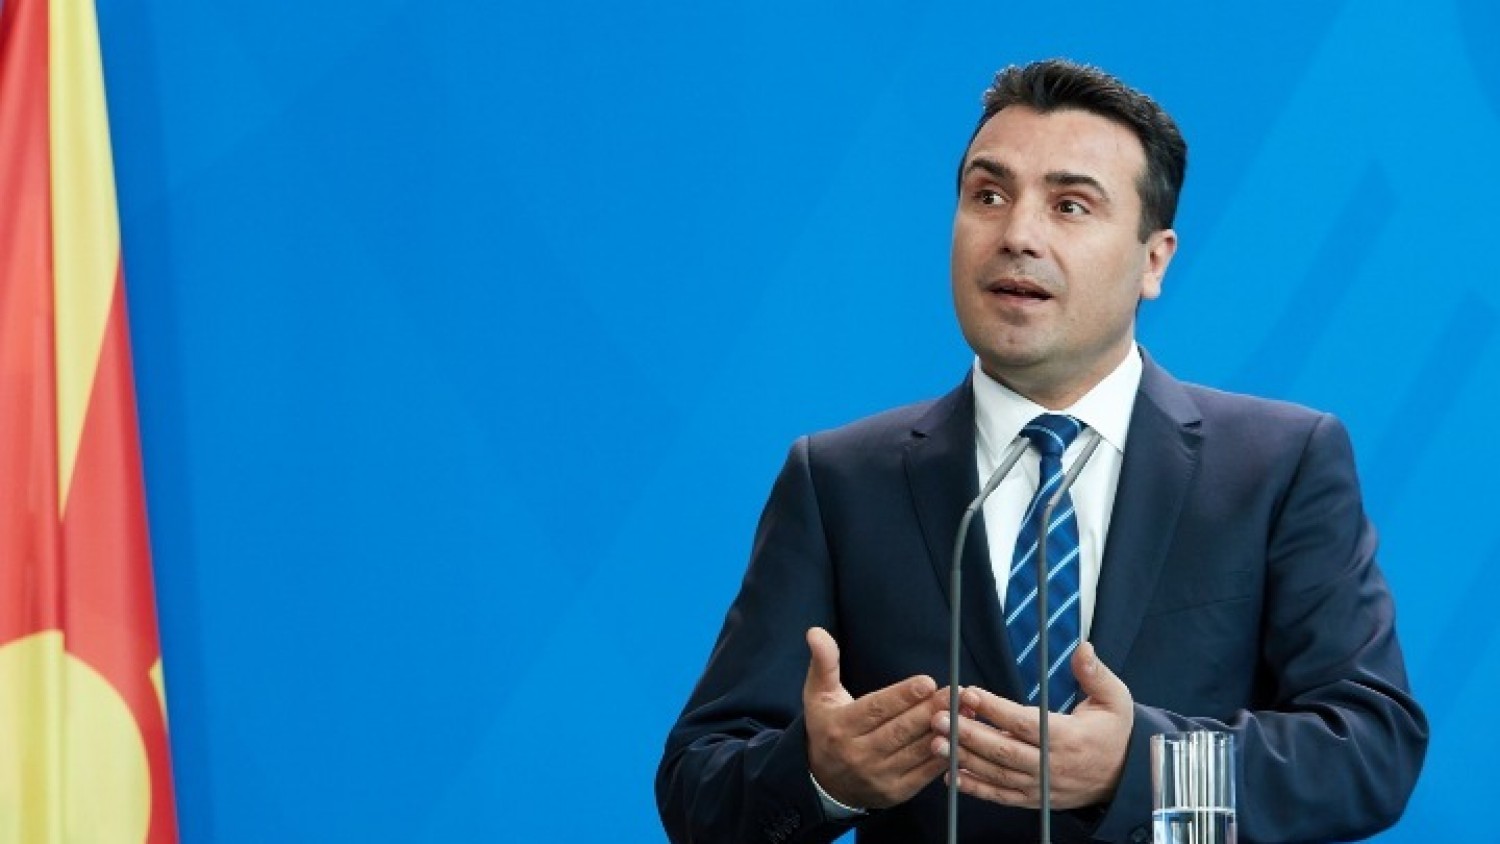 Σκόπια: Ο Ζάεφ στρέφεται πάλι στους αντάρτες του VMRO-DPMNE για τη συνταγματική αναθεώρηση